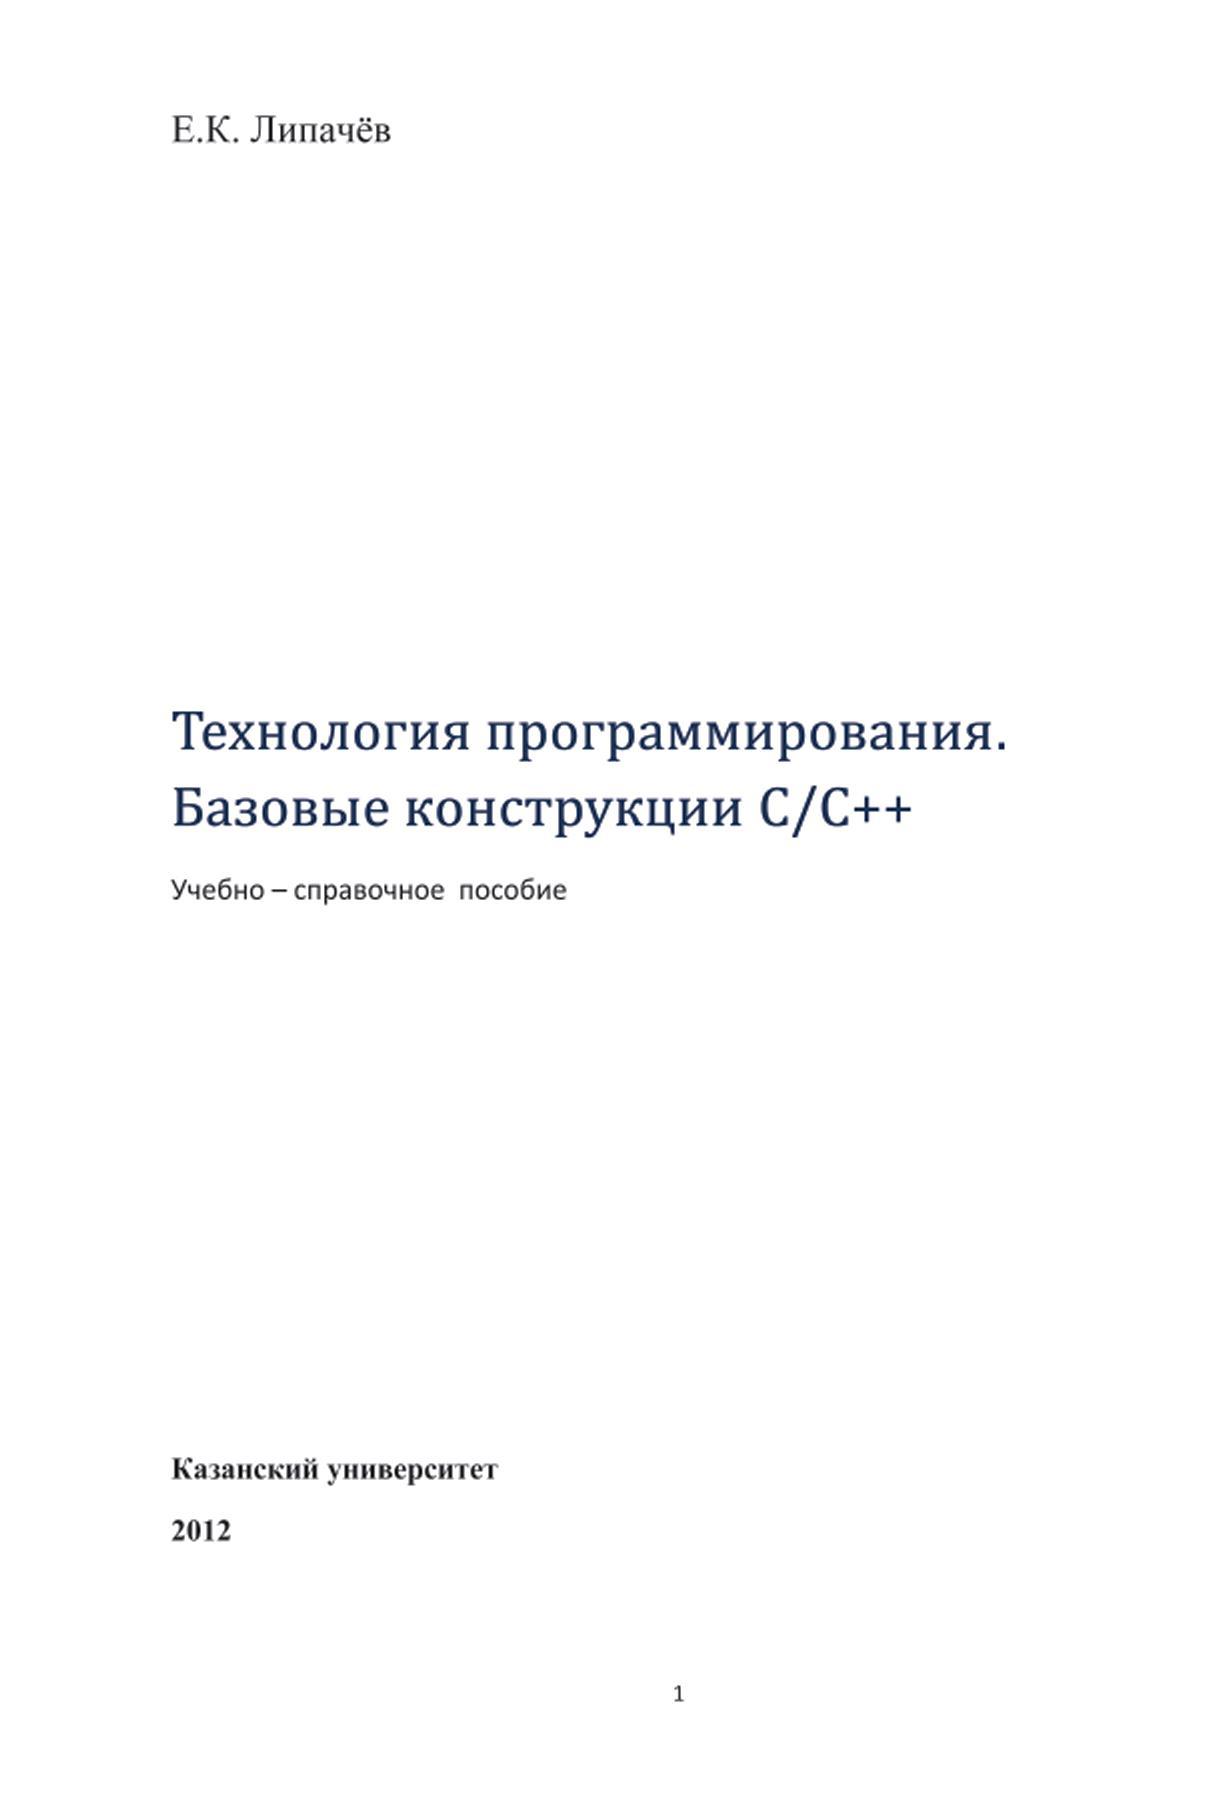 Технология программирования, Базовые конструкции C/C++, Учебно–справочное пособие, Липачёв Е.К., 2012